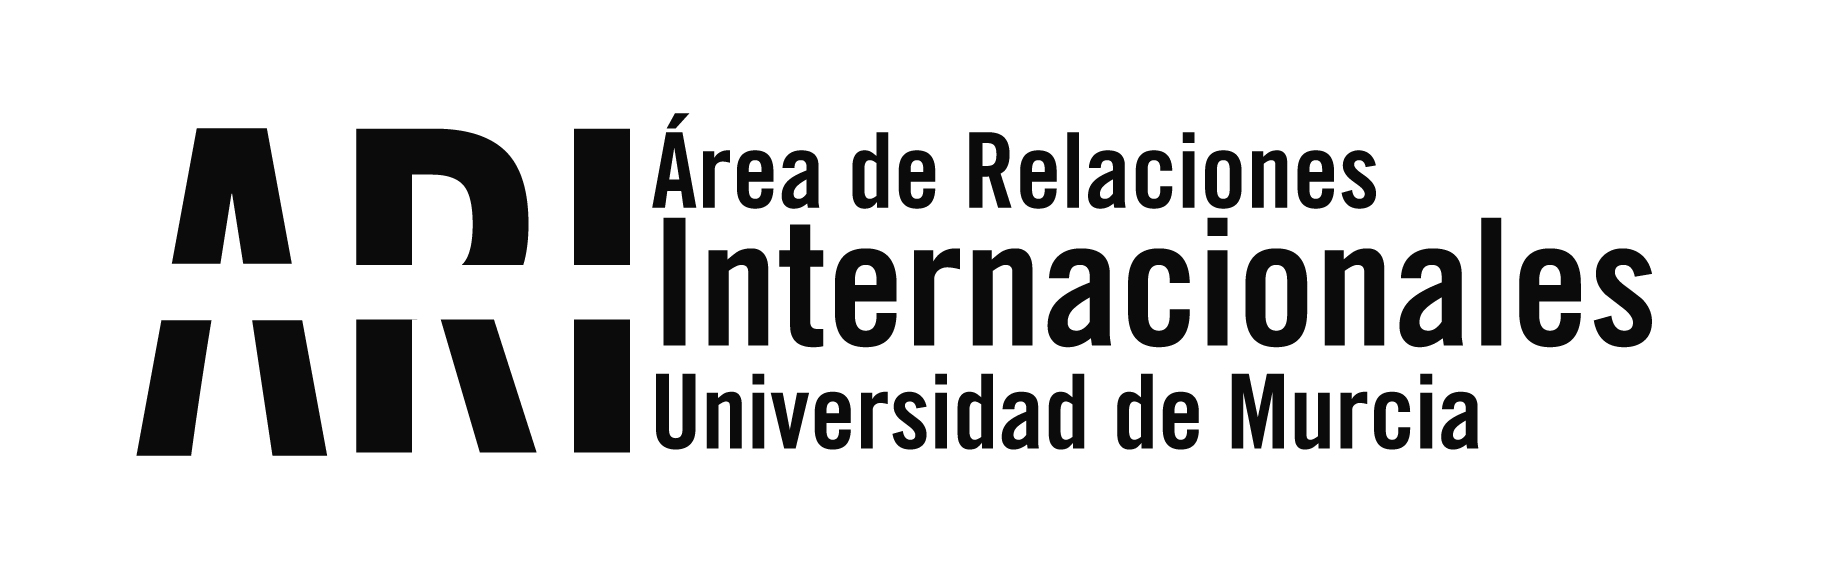 Abierta segunda fase para participar en el  III Concurso Embajadores #UMUDestinoEstrella con las ayudas vacantes - hasta 15 de diciembre - Área de Relaciones Internacionales